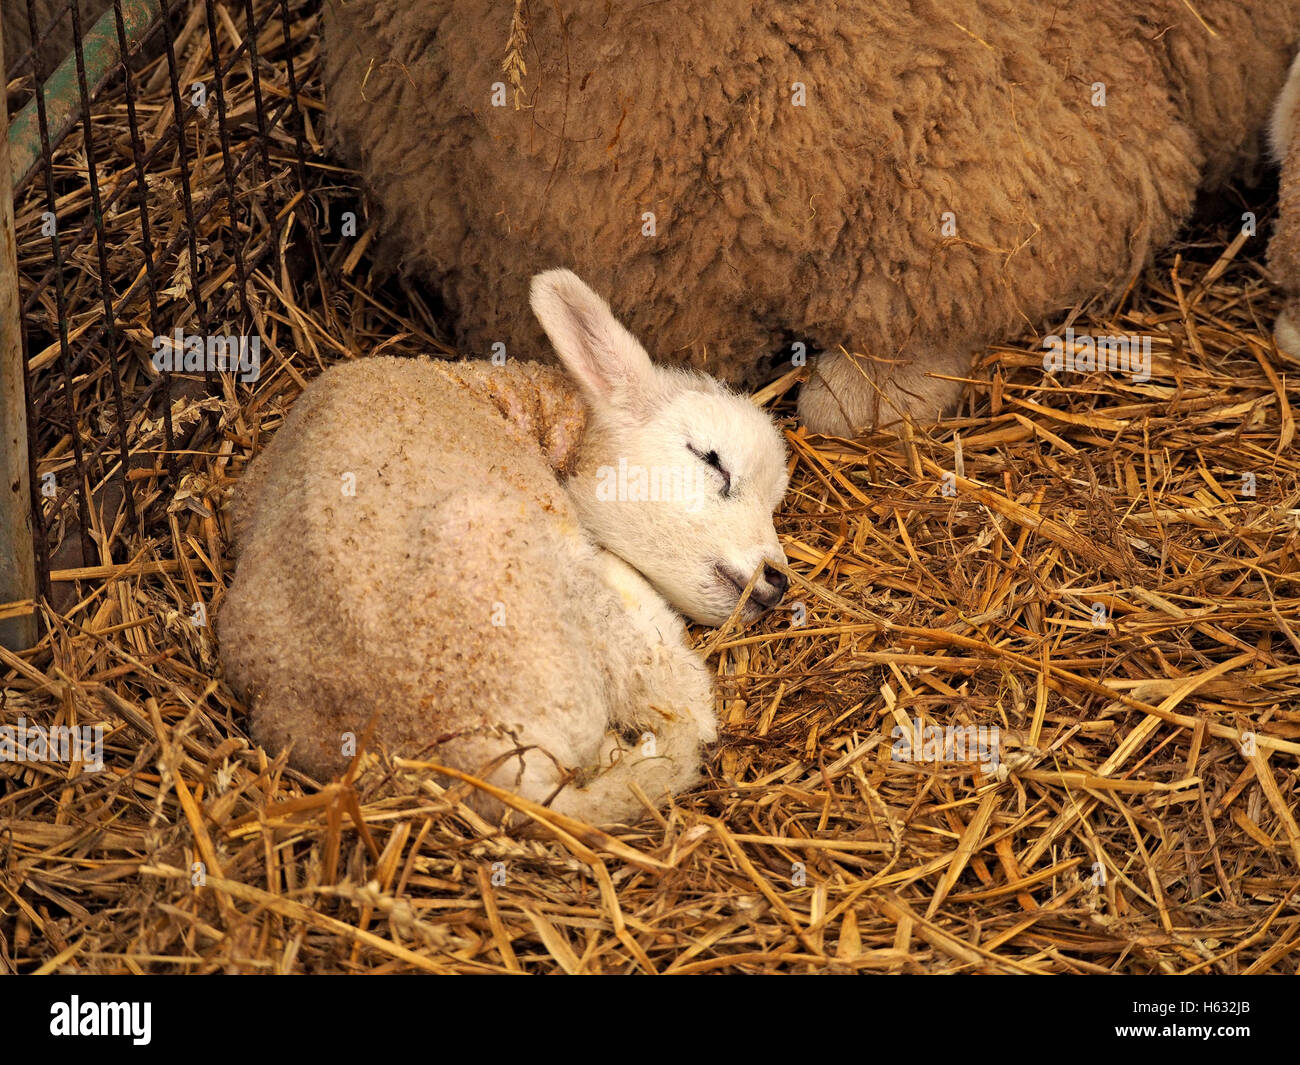 Neugeborenes Lamm im Stroh in der Scheune mit glückseligen Ausdruck  Bettwäsche kuscheln Stockfotografie - Alamy